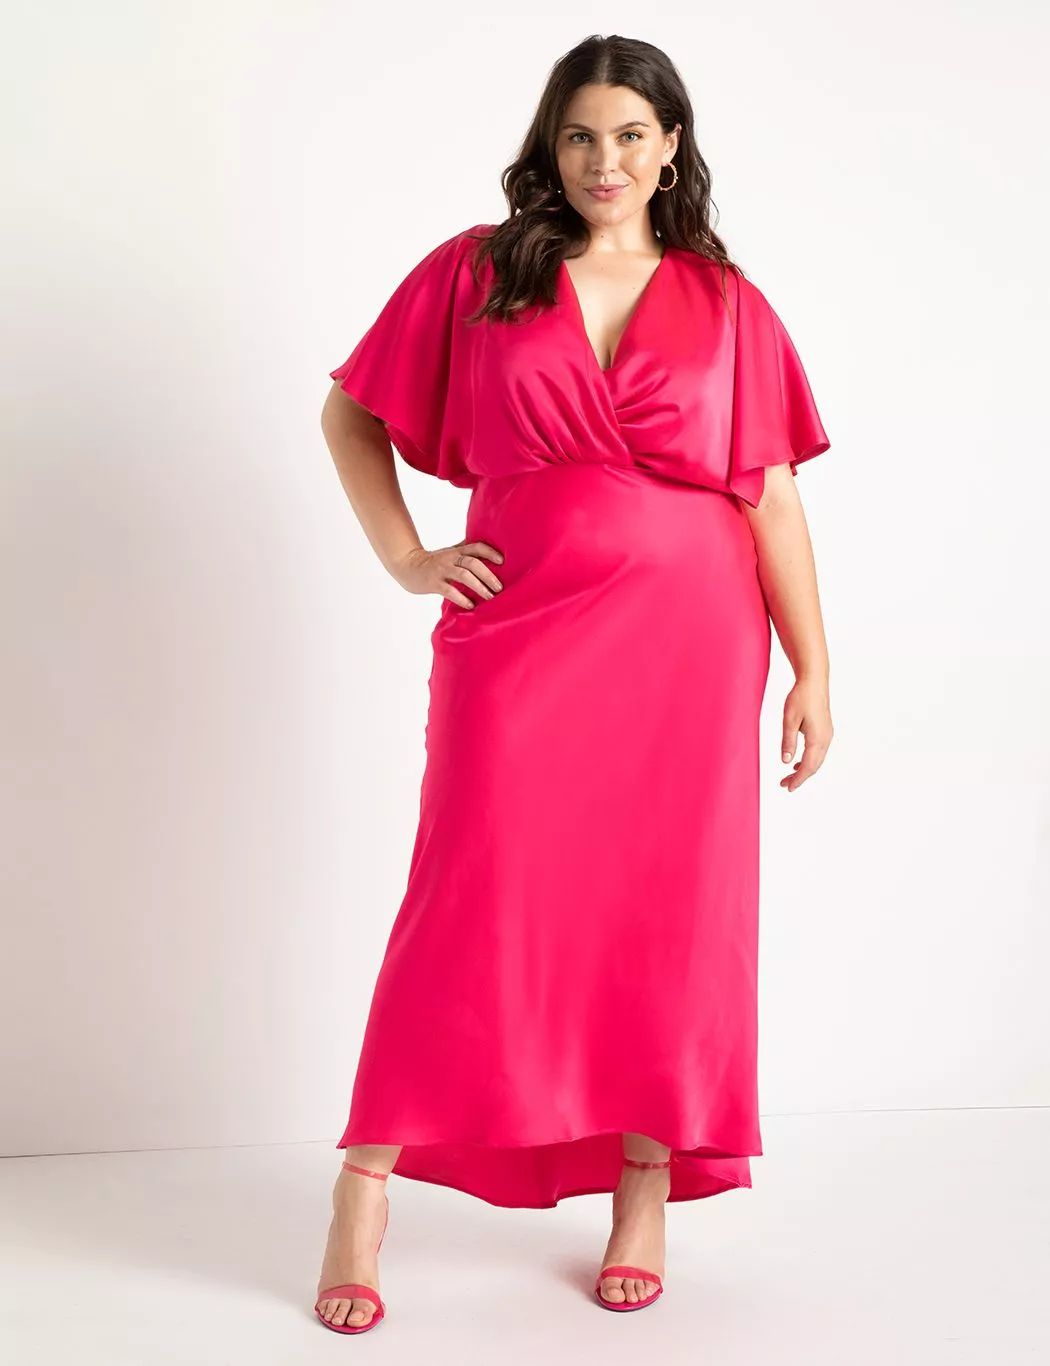 Kimono Sleeve Maxi Dress | Women's Plus Size Dresses | ELOQUII | Eloquii